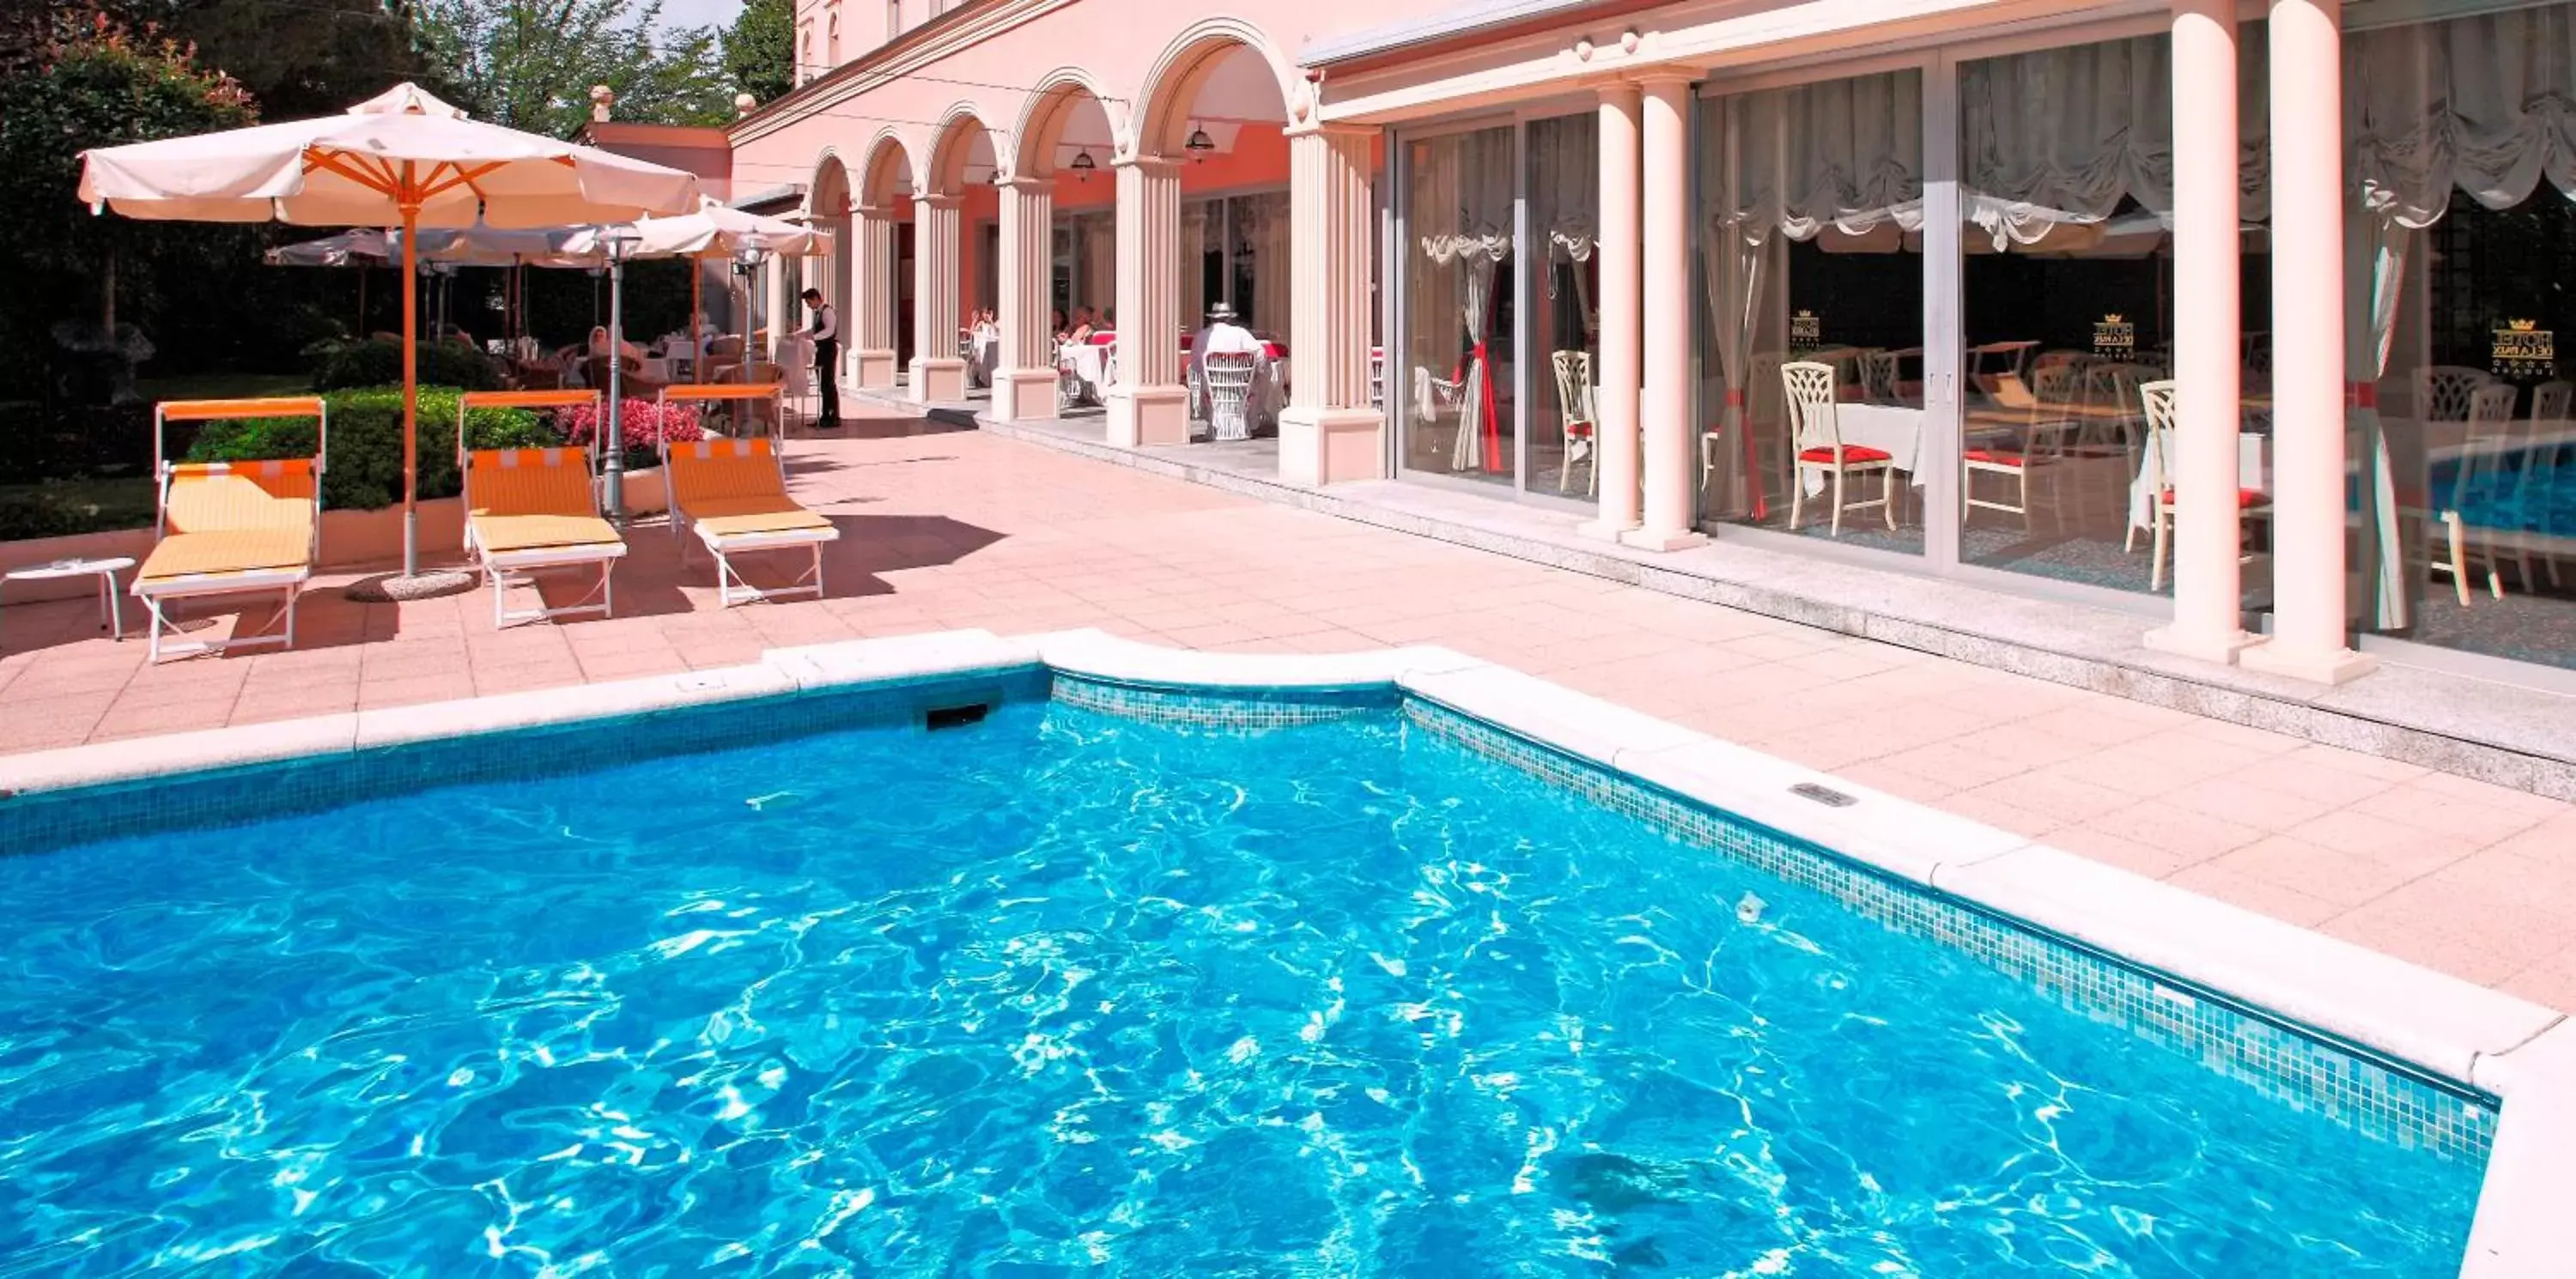 Balcony/Terrace, Swimming Pool in Hotel De La Paix